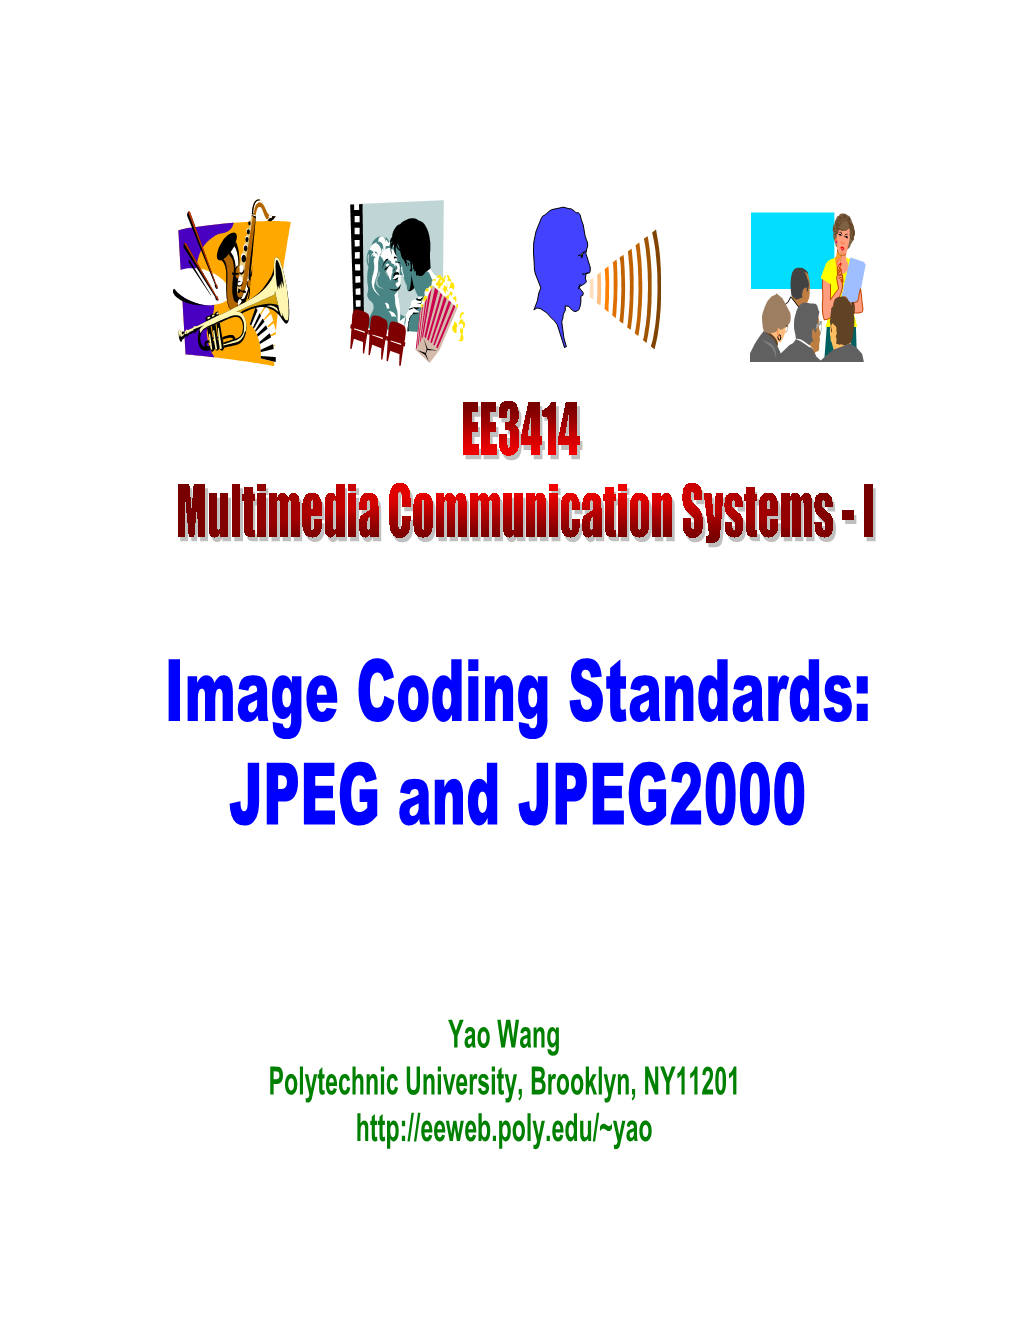 Image Coding Standards: JPEG and JPEG2000